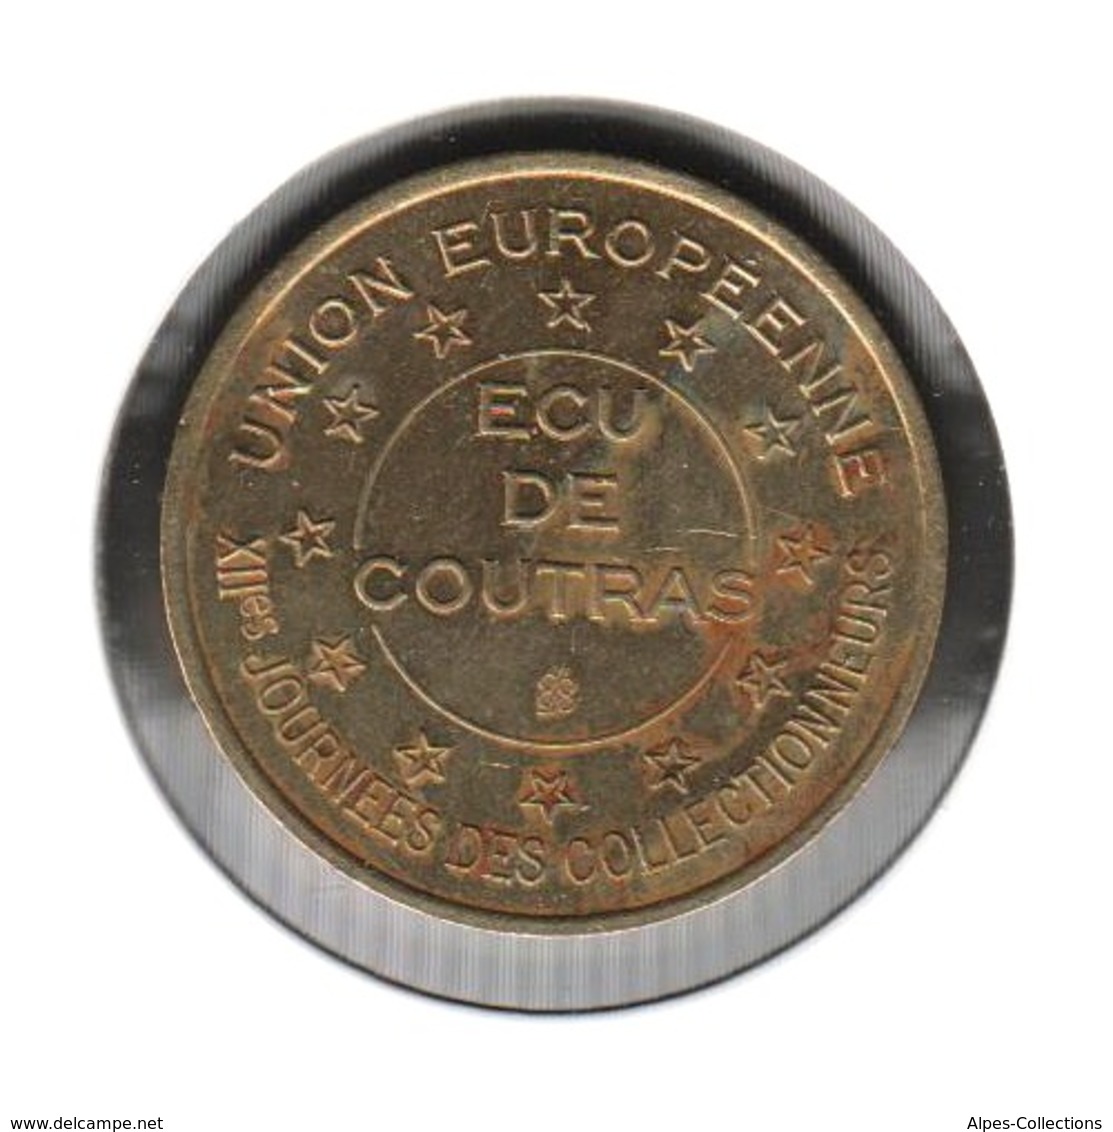 COUTRAS - EC0010.2 - 1 ECU DES VILLES - Réf: T21 - 1994 - Euros Of The Cities